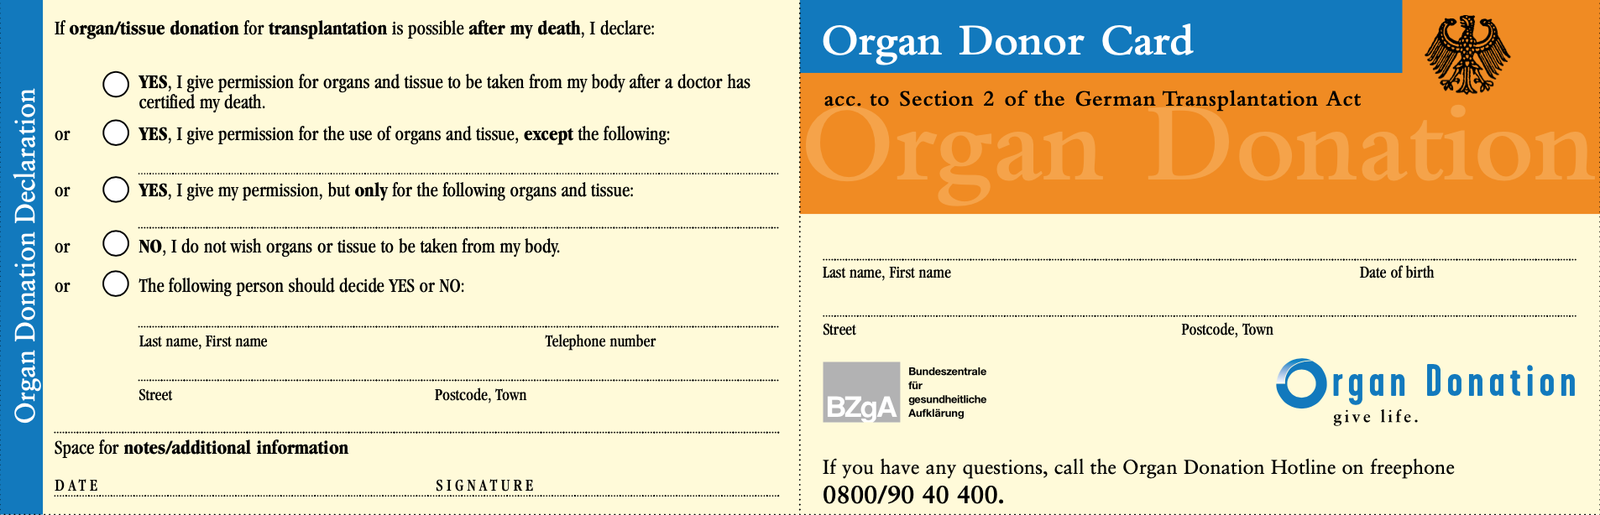 German organ donor card